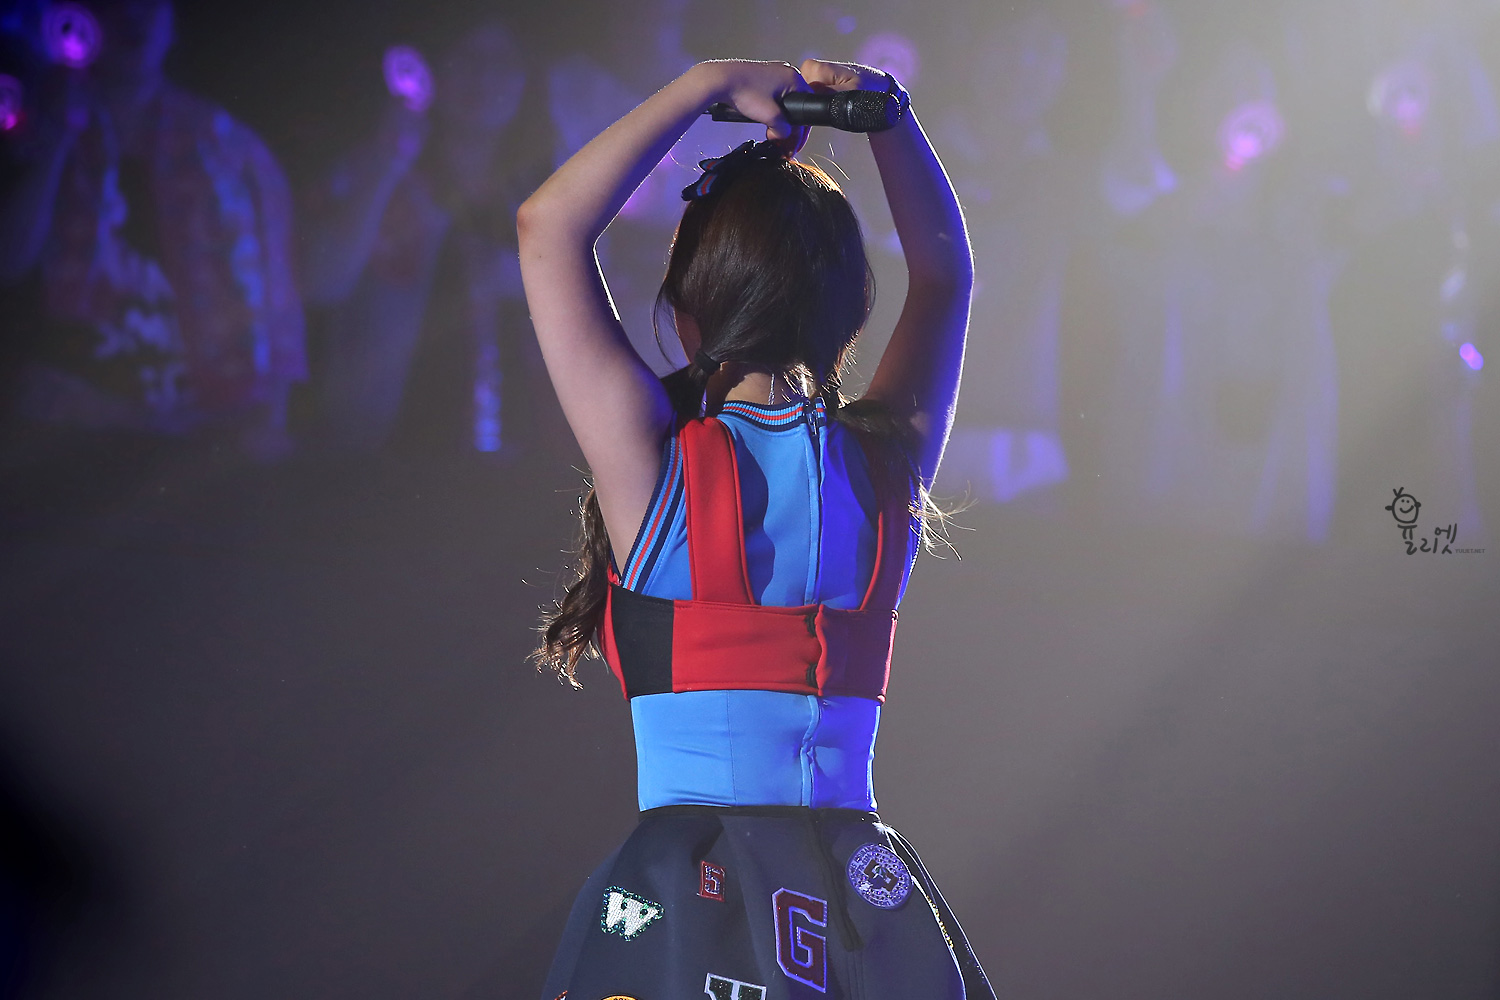 Yuri @ Japan Tour 2014 in Kobe